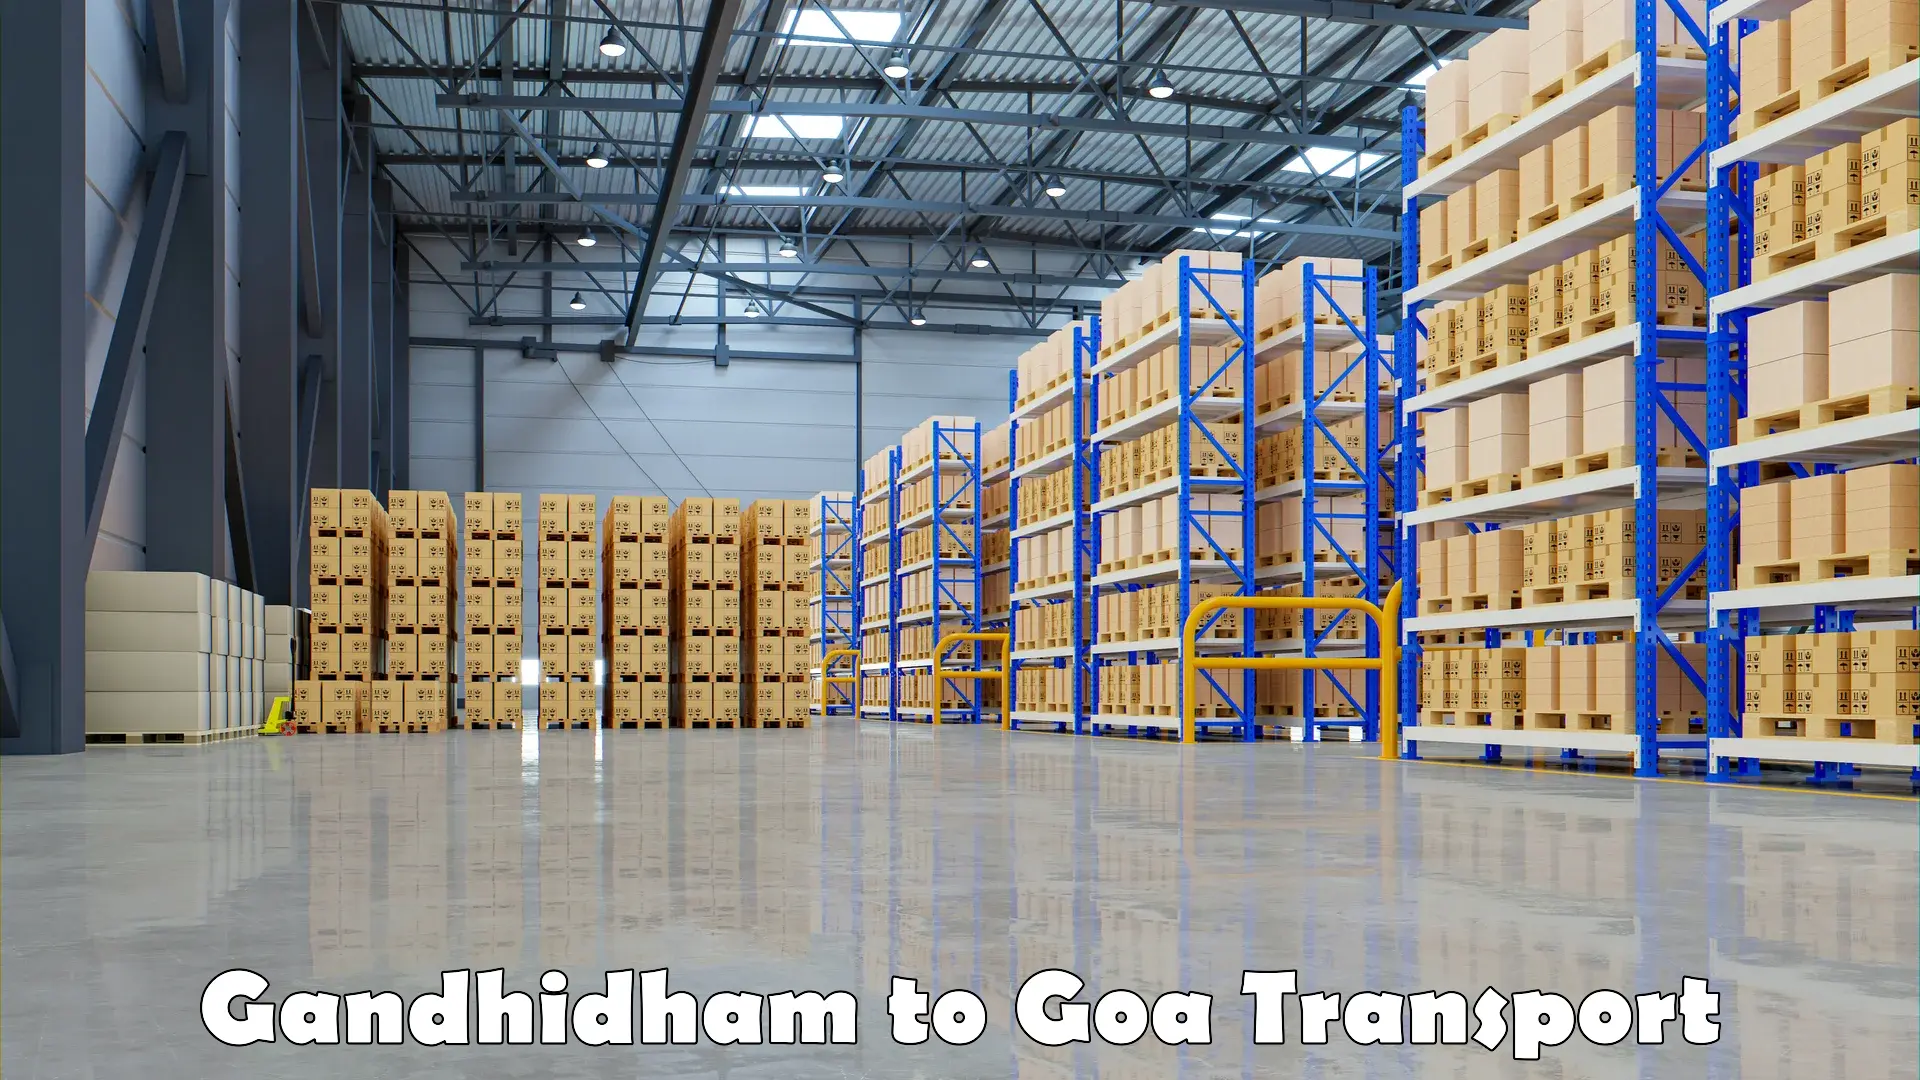 Goods delivery service Gandhidham to Panaji